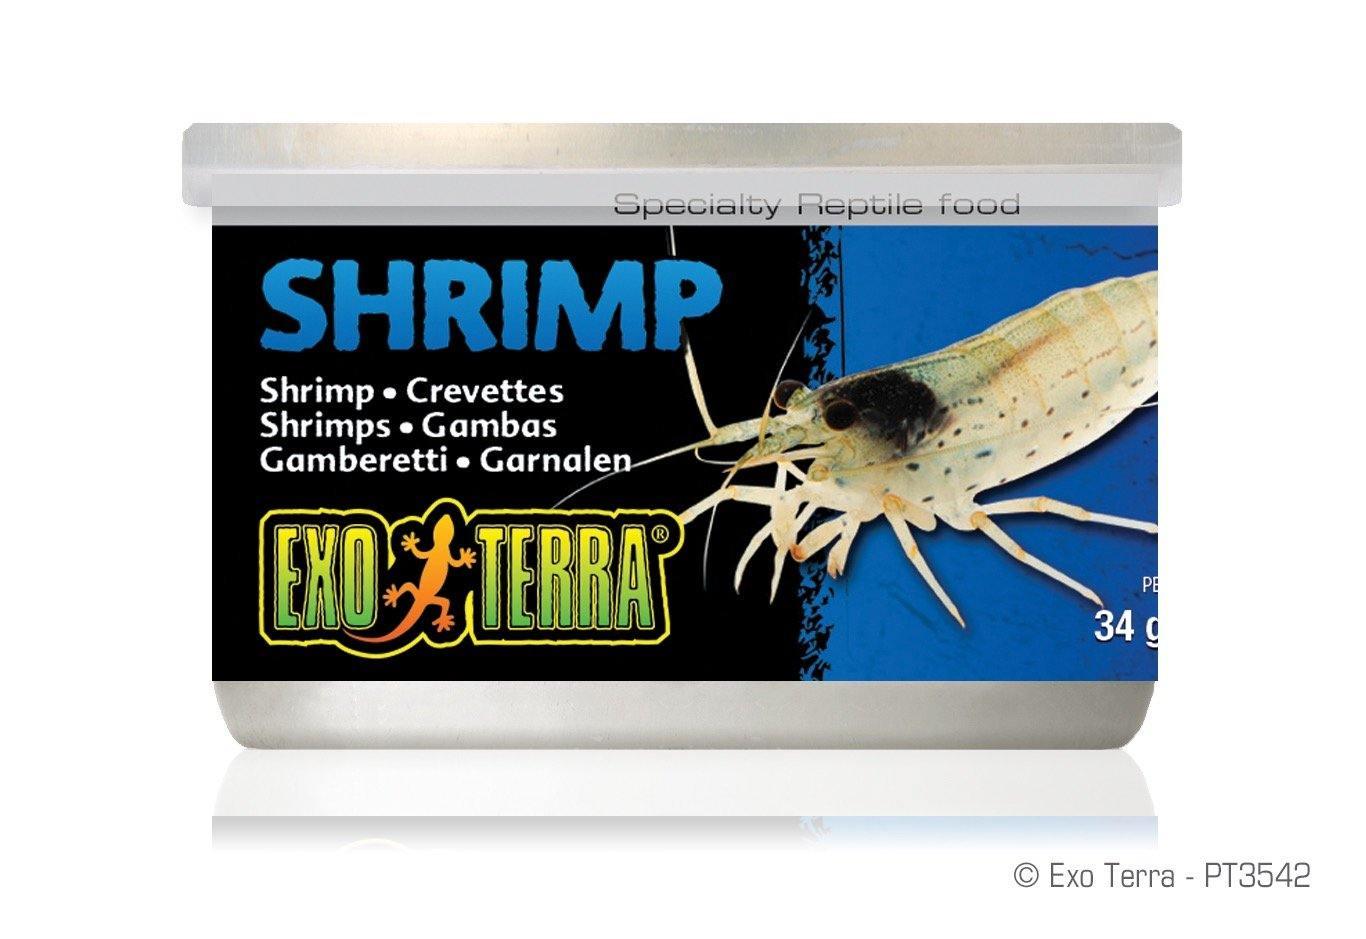 Exo Terra Canned Shrimp - Amazing Amazon